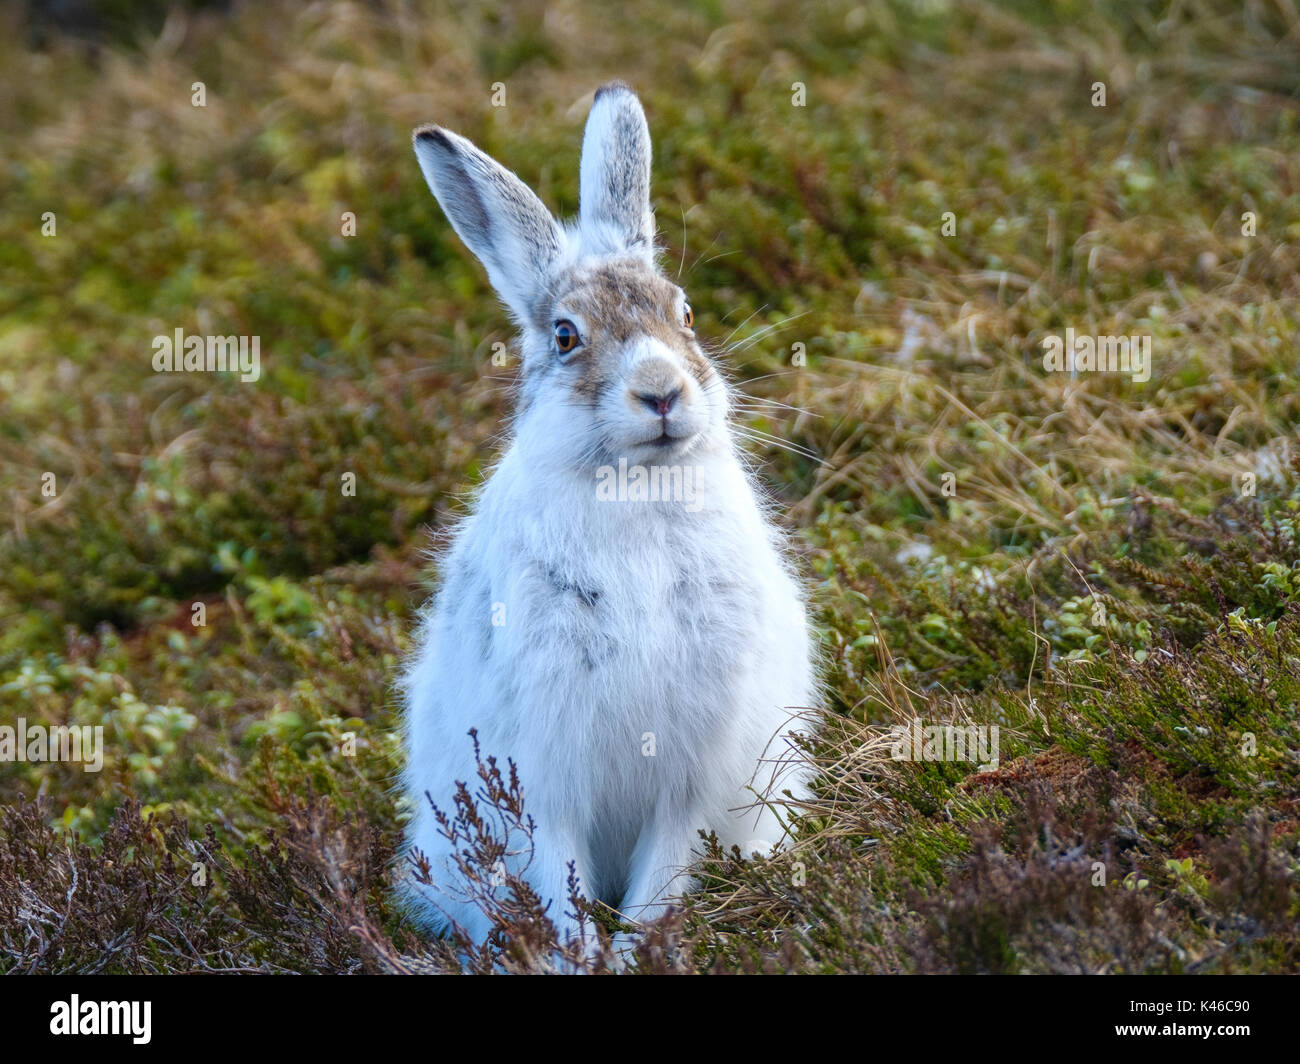 Scottish mountain hare sitting on moorland Stock Photo